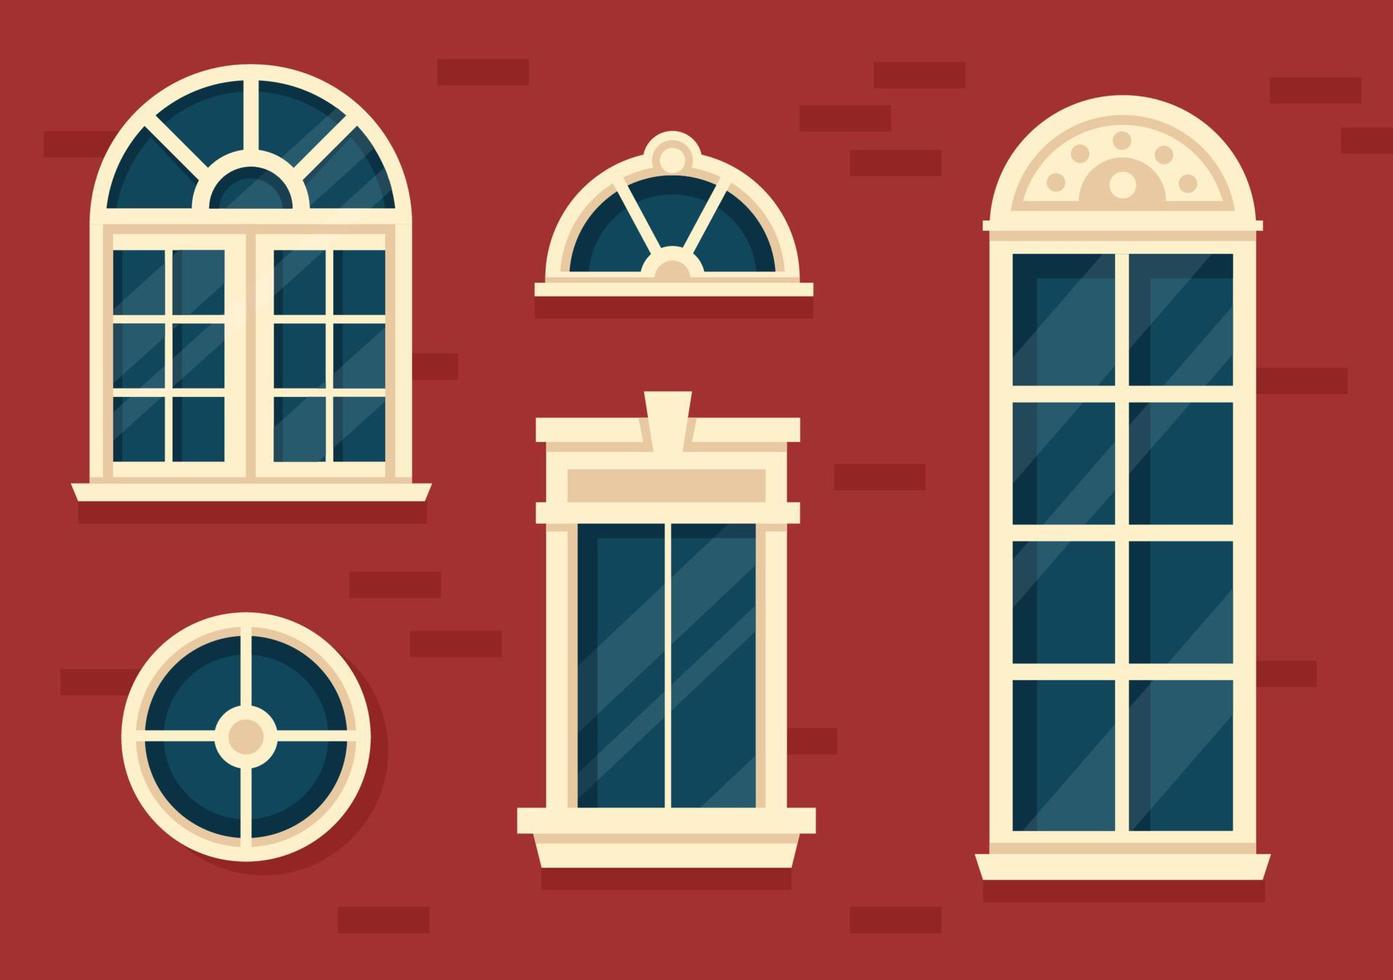 architecture de maison avec ensemble de portes et fenêtres de différentes formes, couleurs et tailles dans le modèle illustration de fond plat dessin animé dessiné à la main vecteur